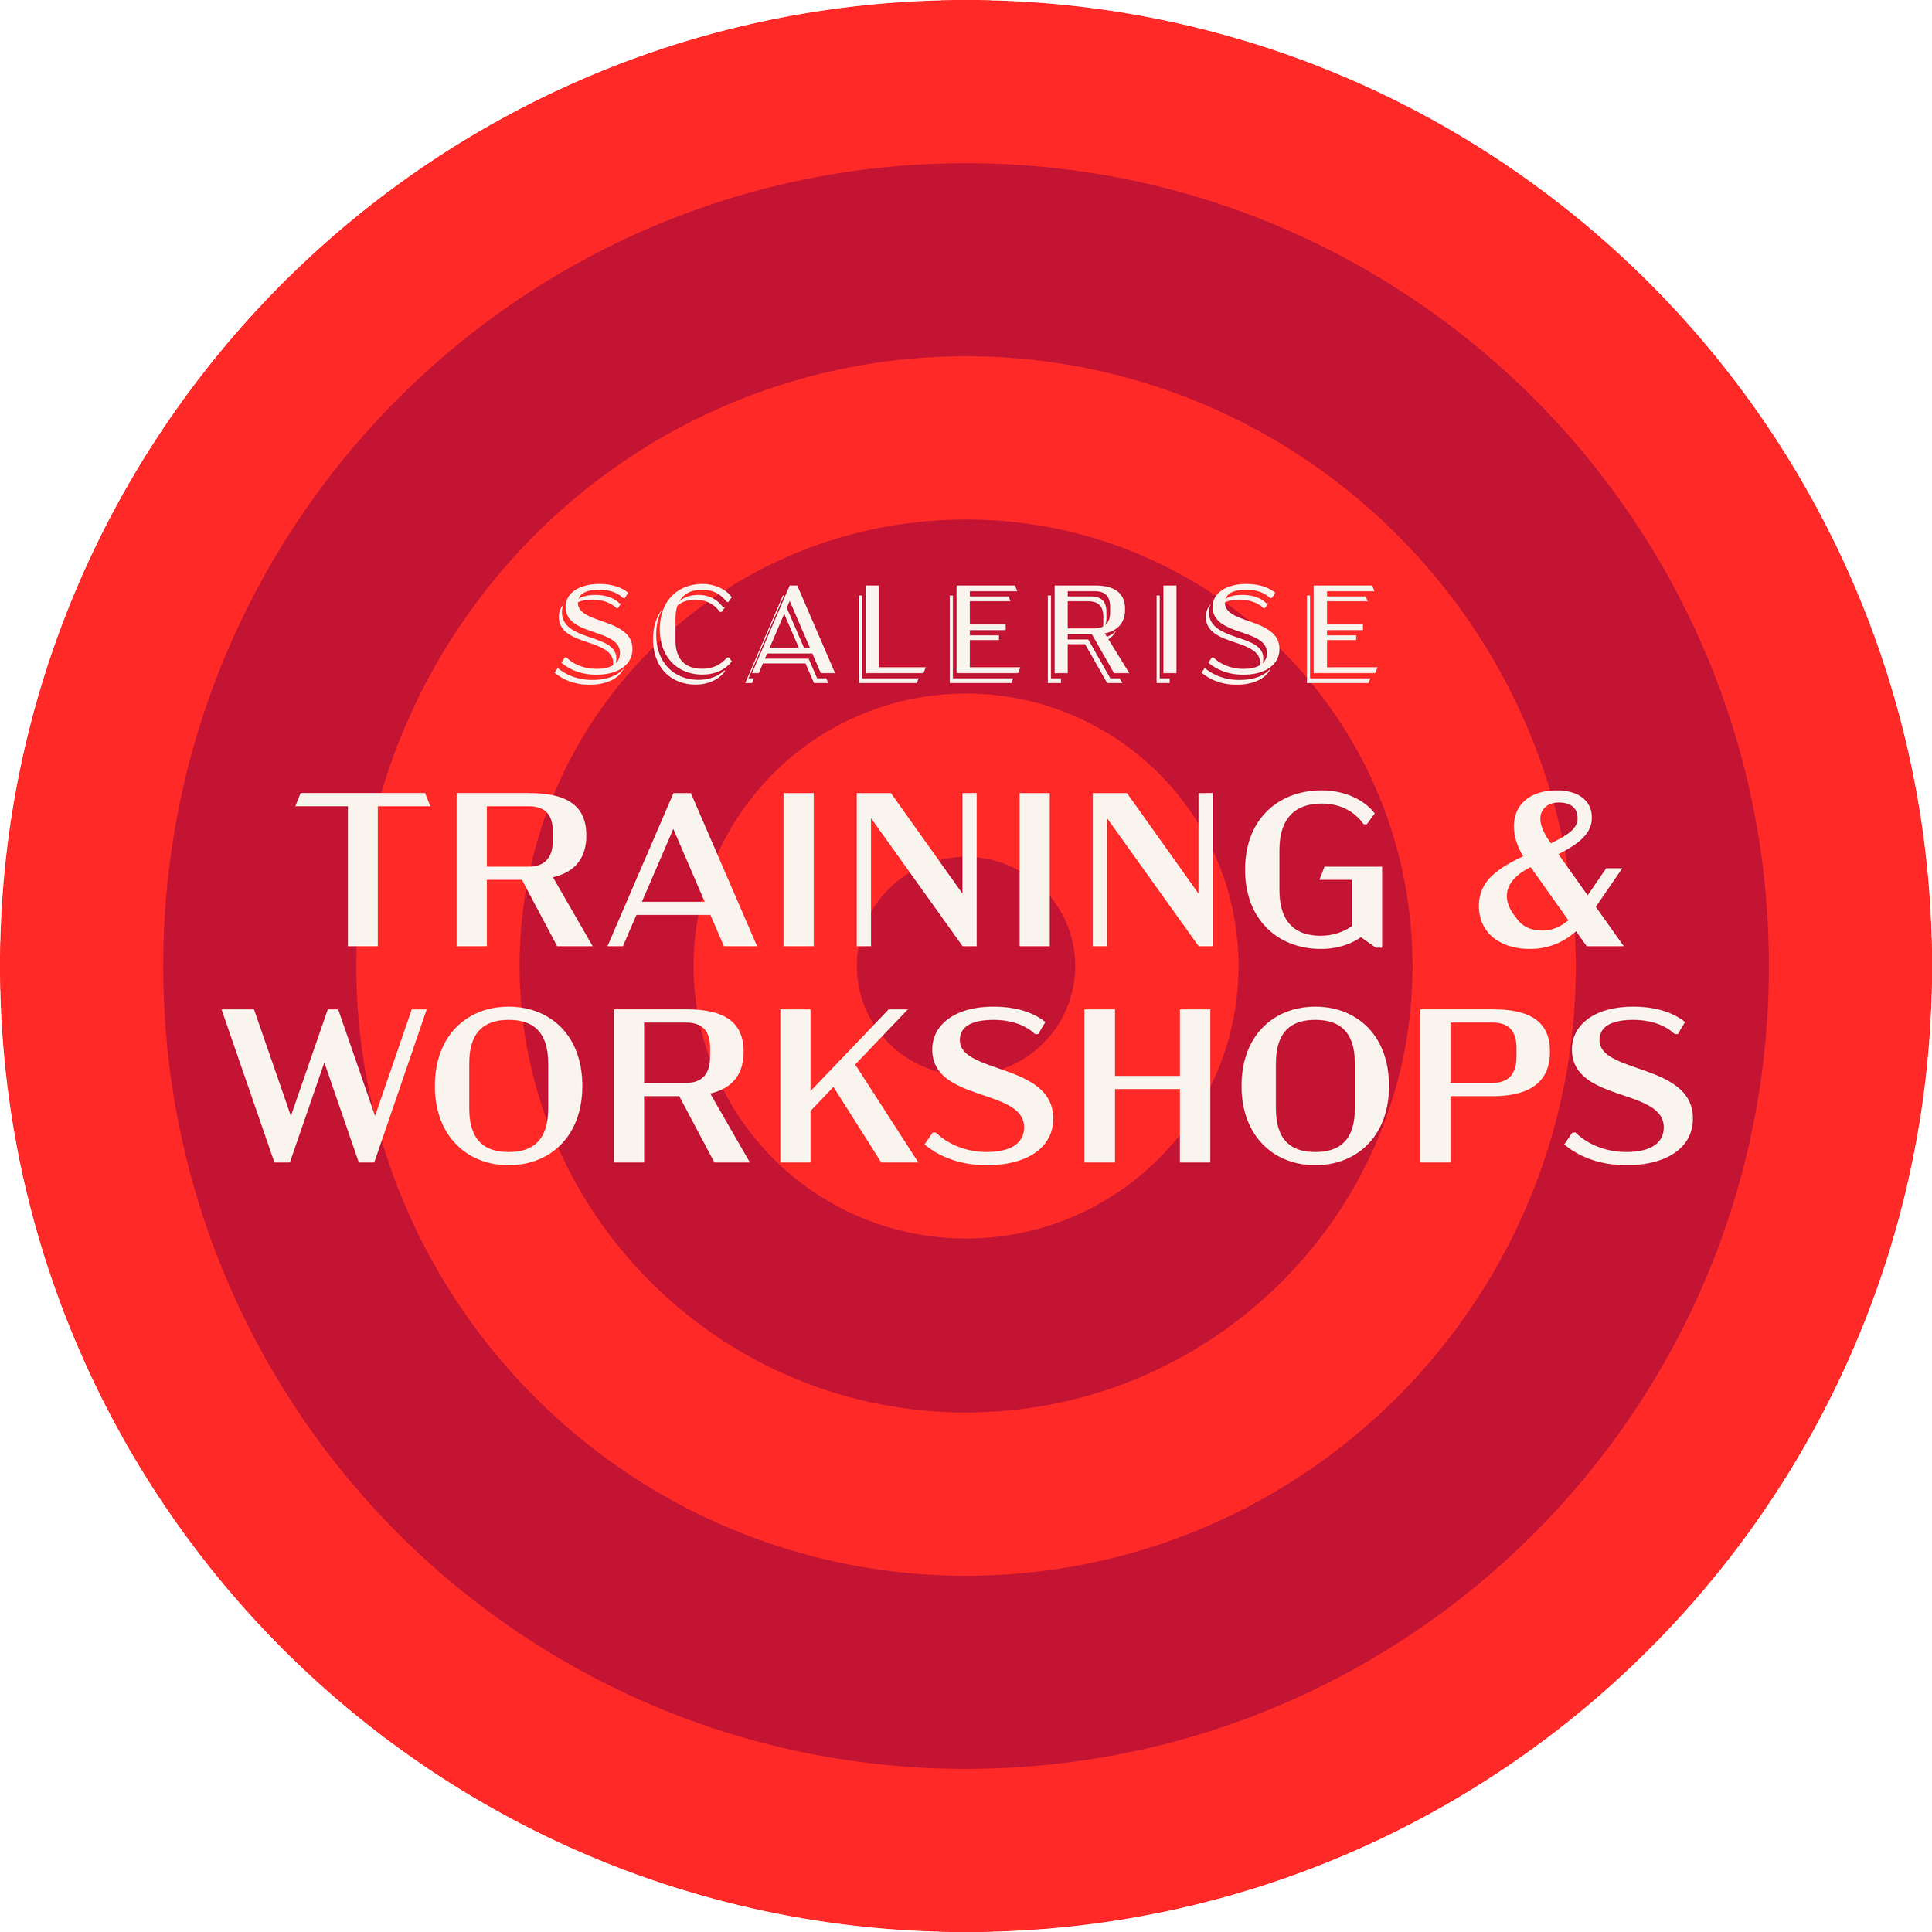 scalerise-training-workshops-botton.png